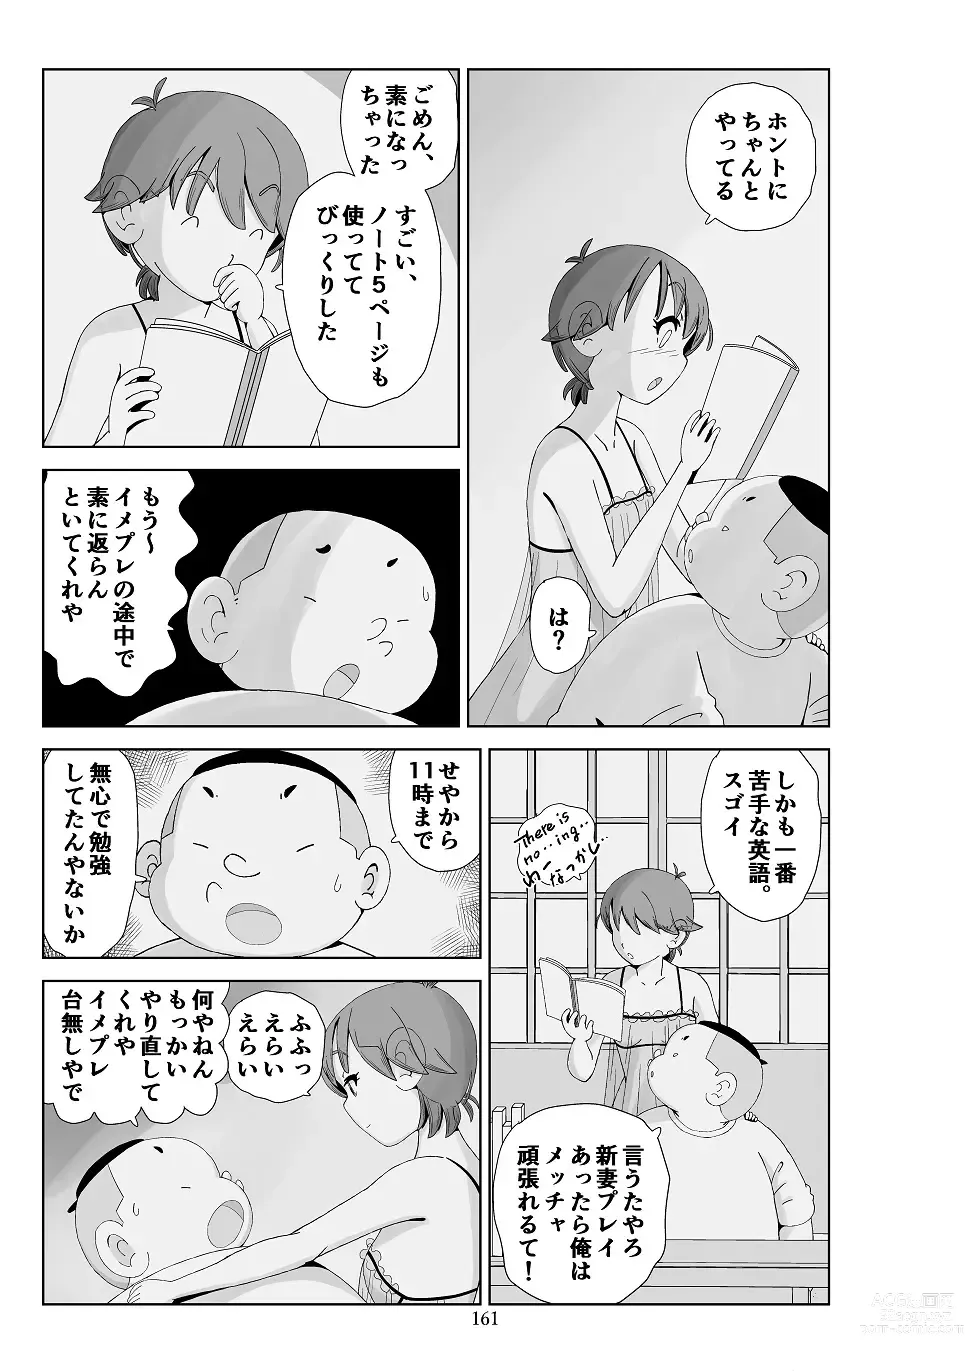 Page 162 of doujinshi Futoshi 3